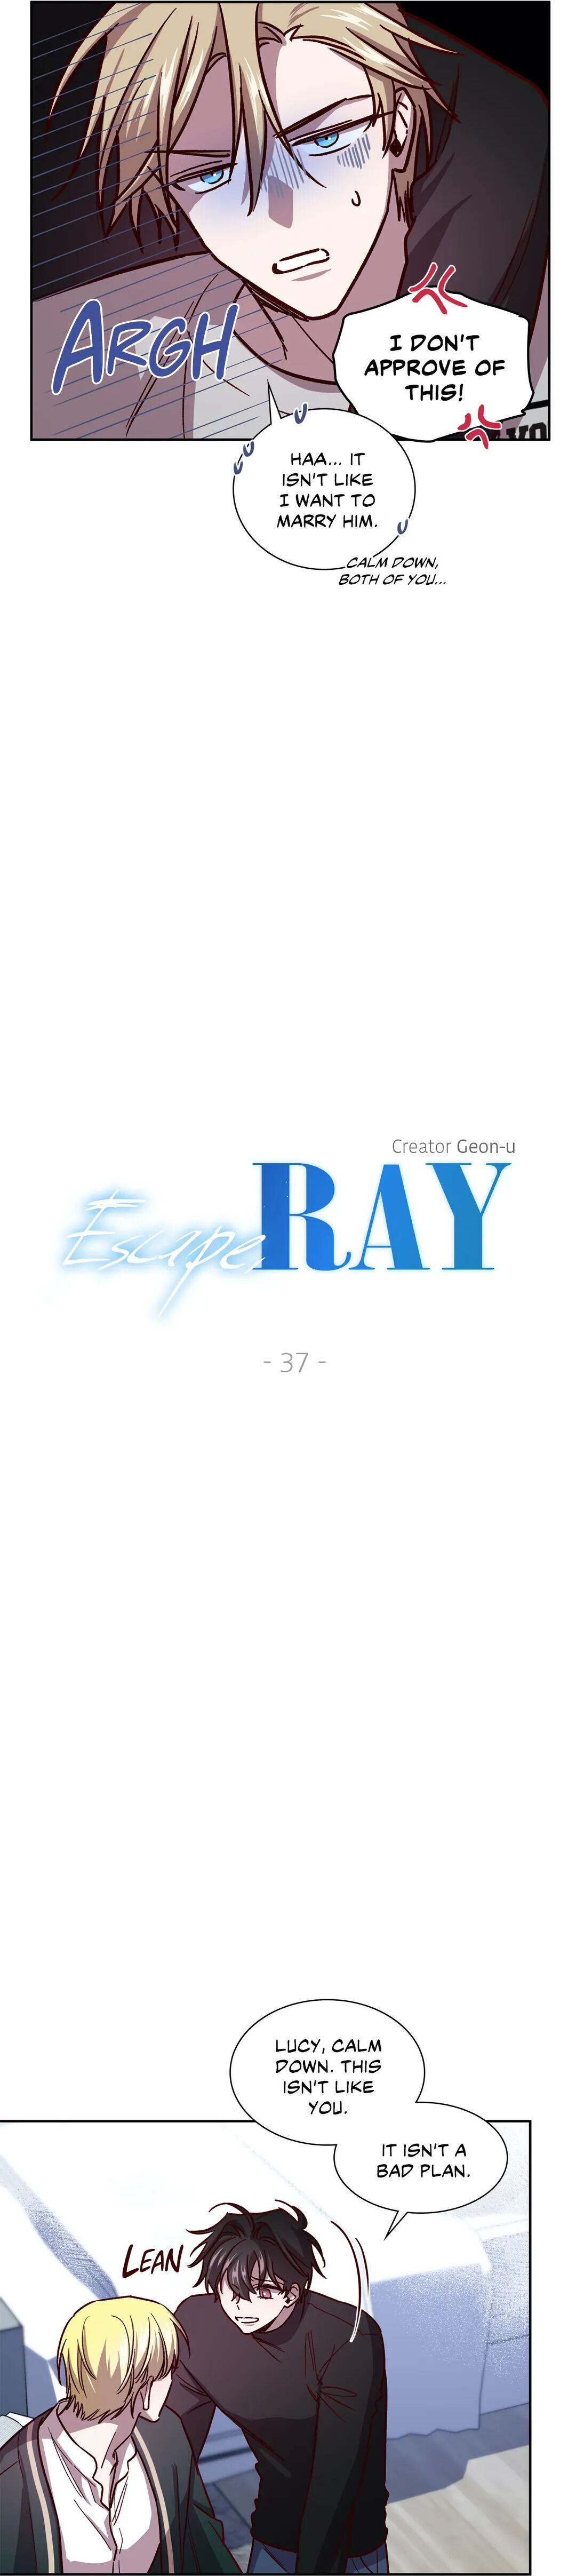 Escape, Ray - Page 3